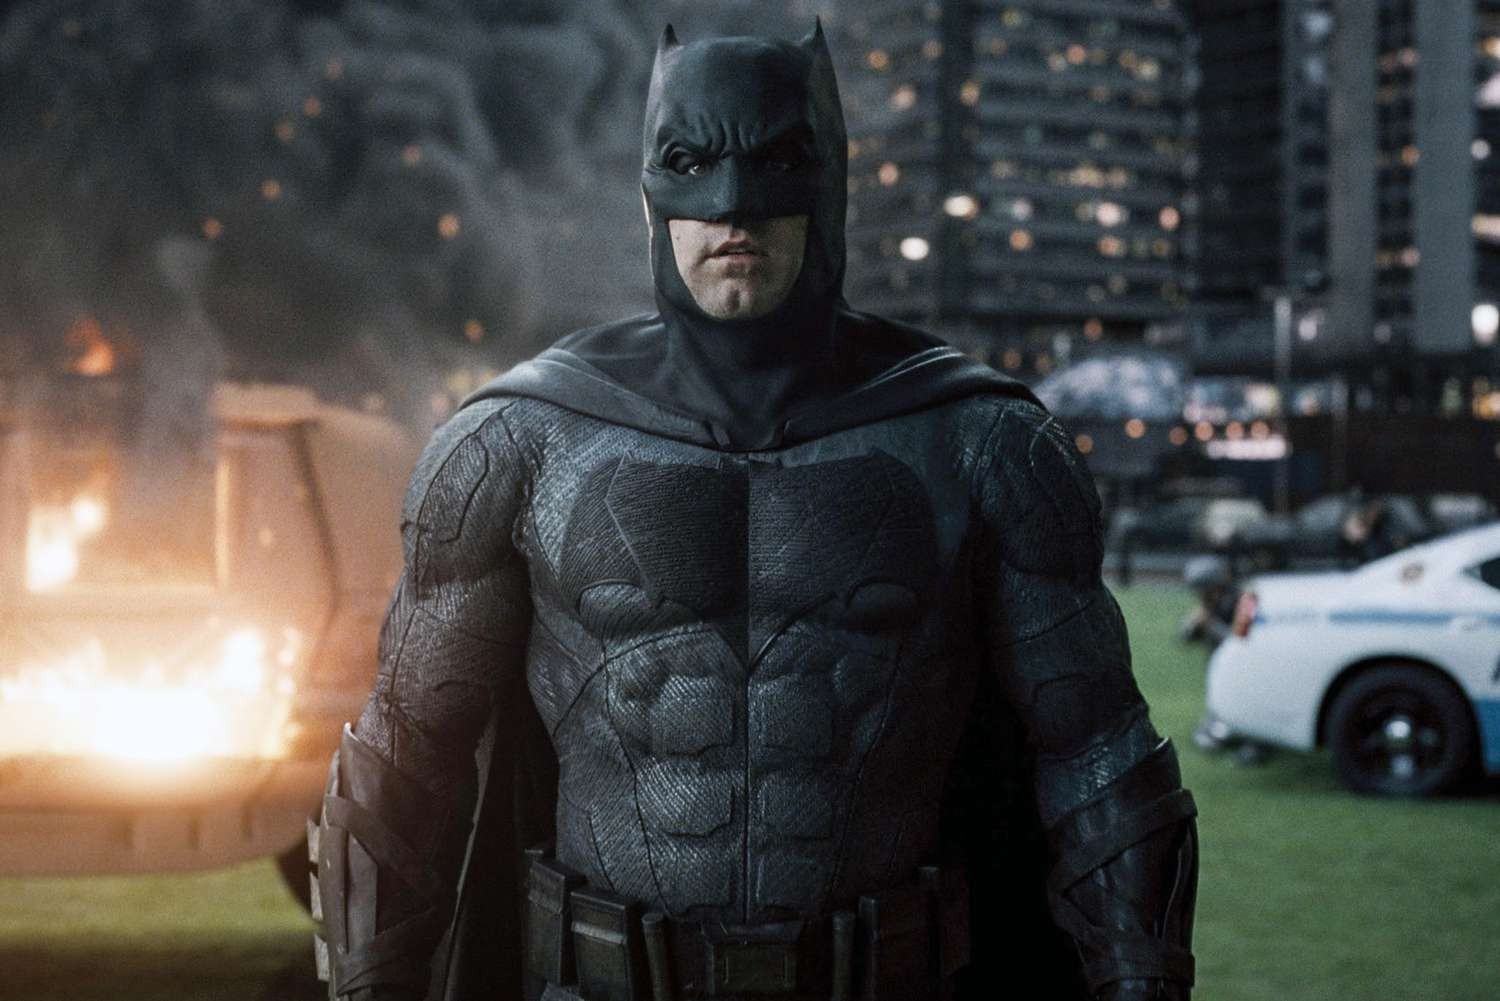 Ben Affleck plays Batman in Justice League